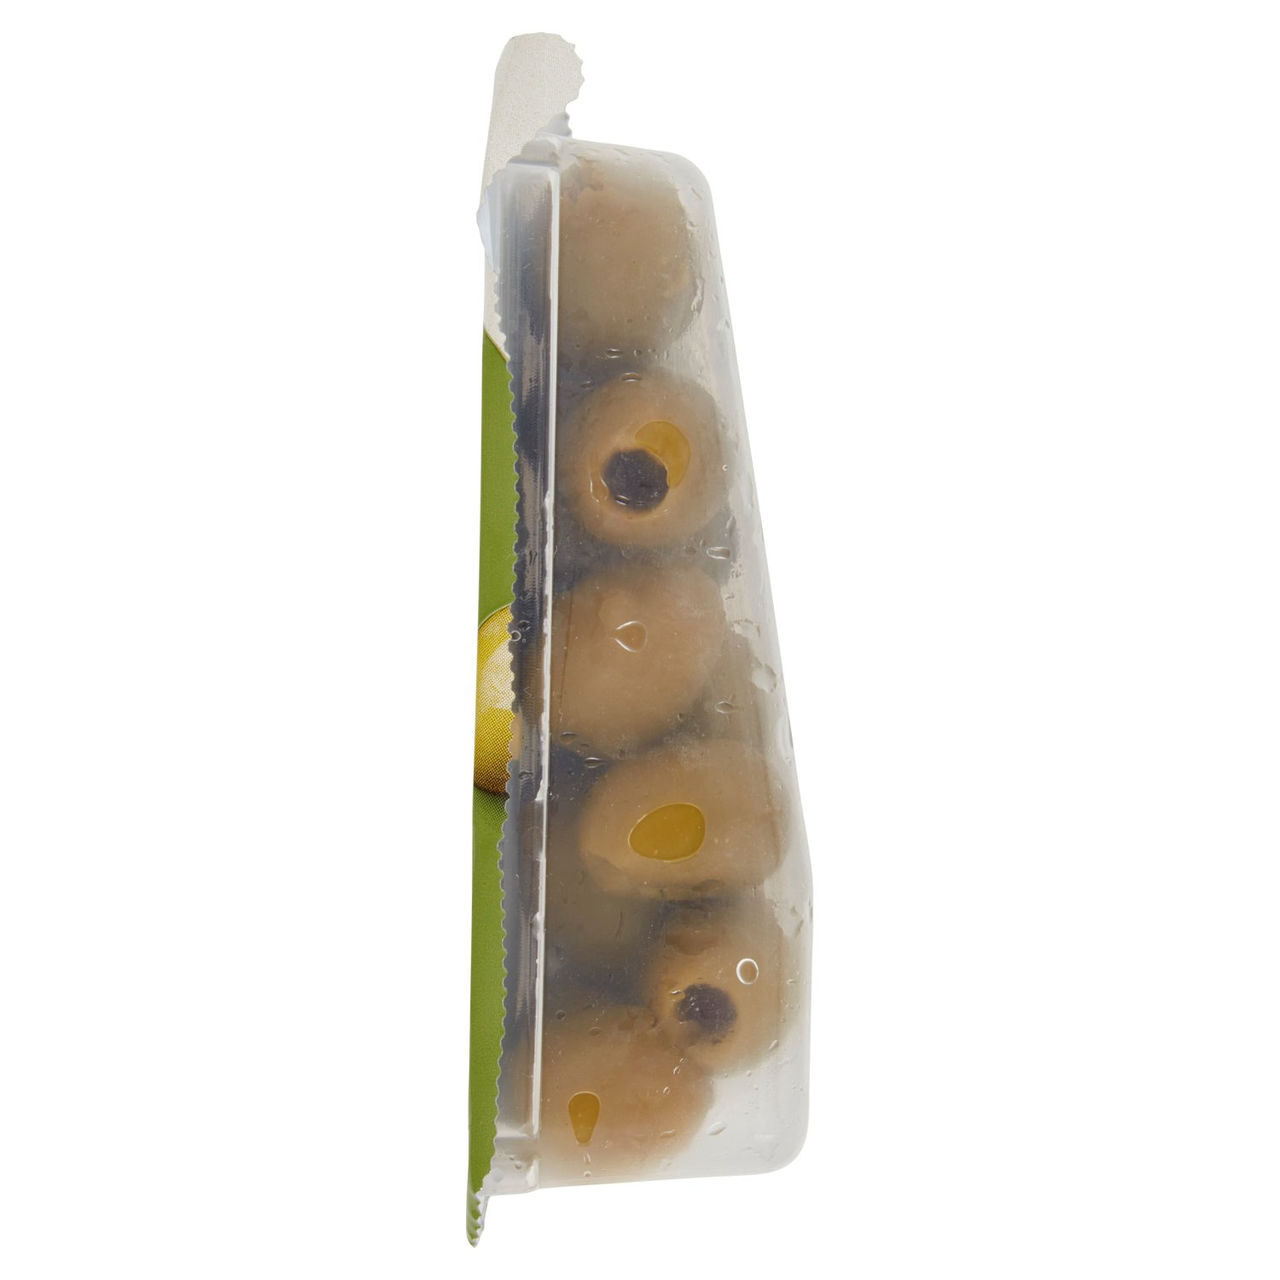 Olive Verdi Snocciolate Conad in vendita online